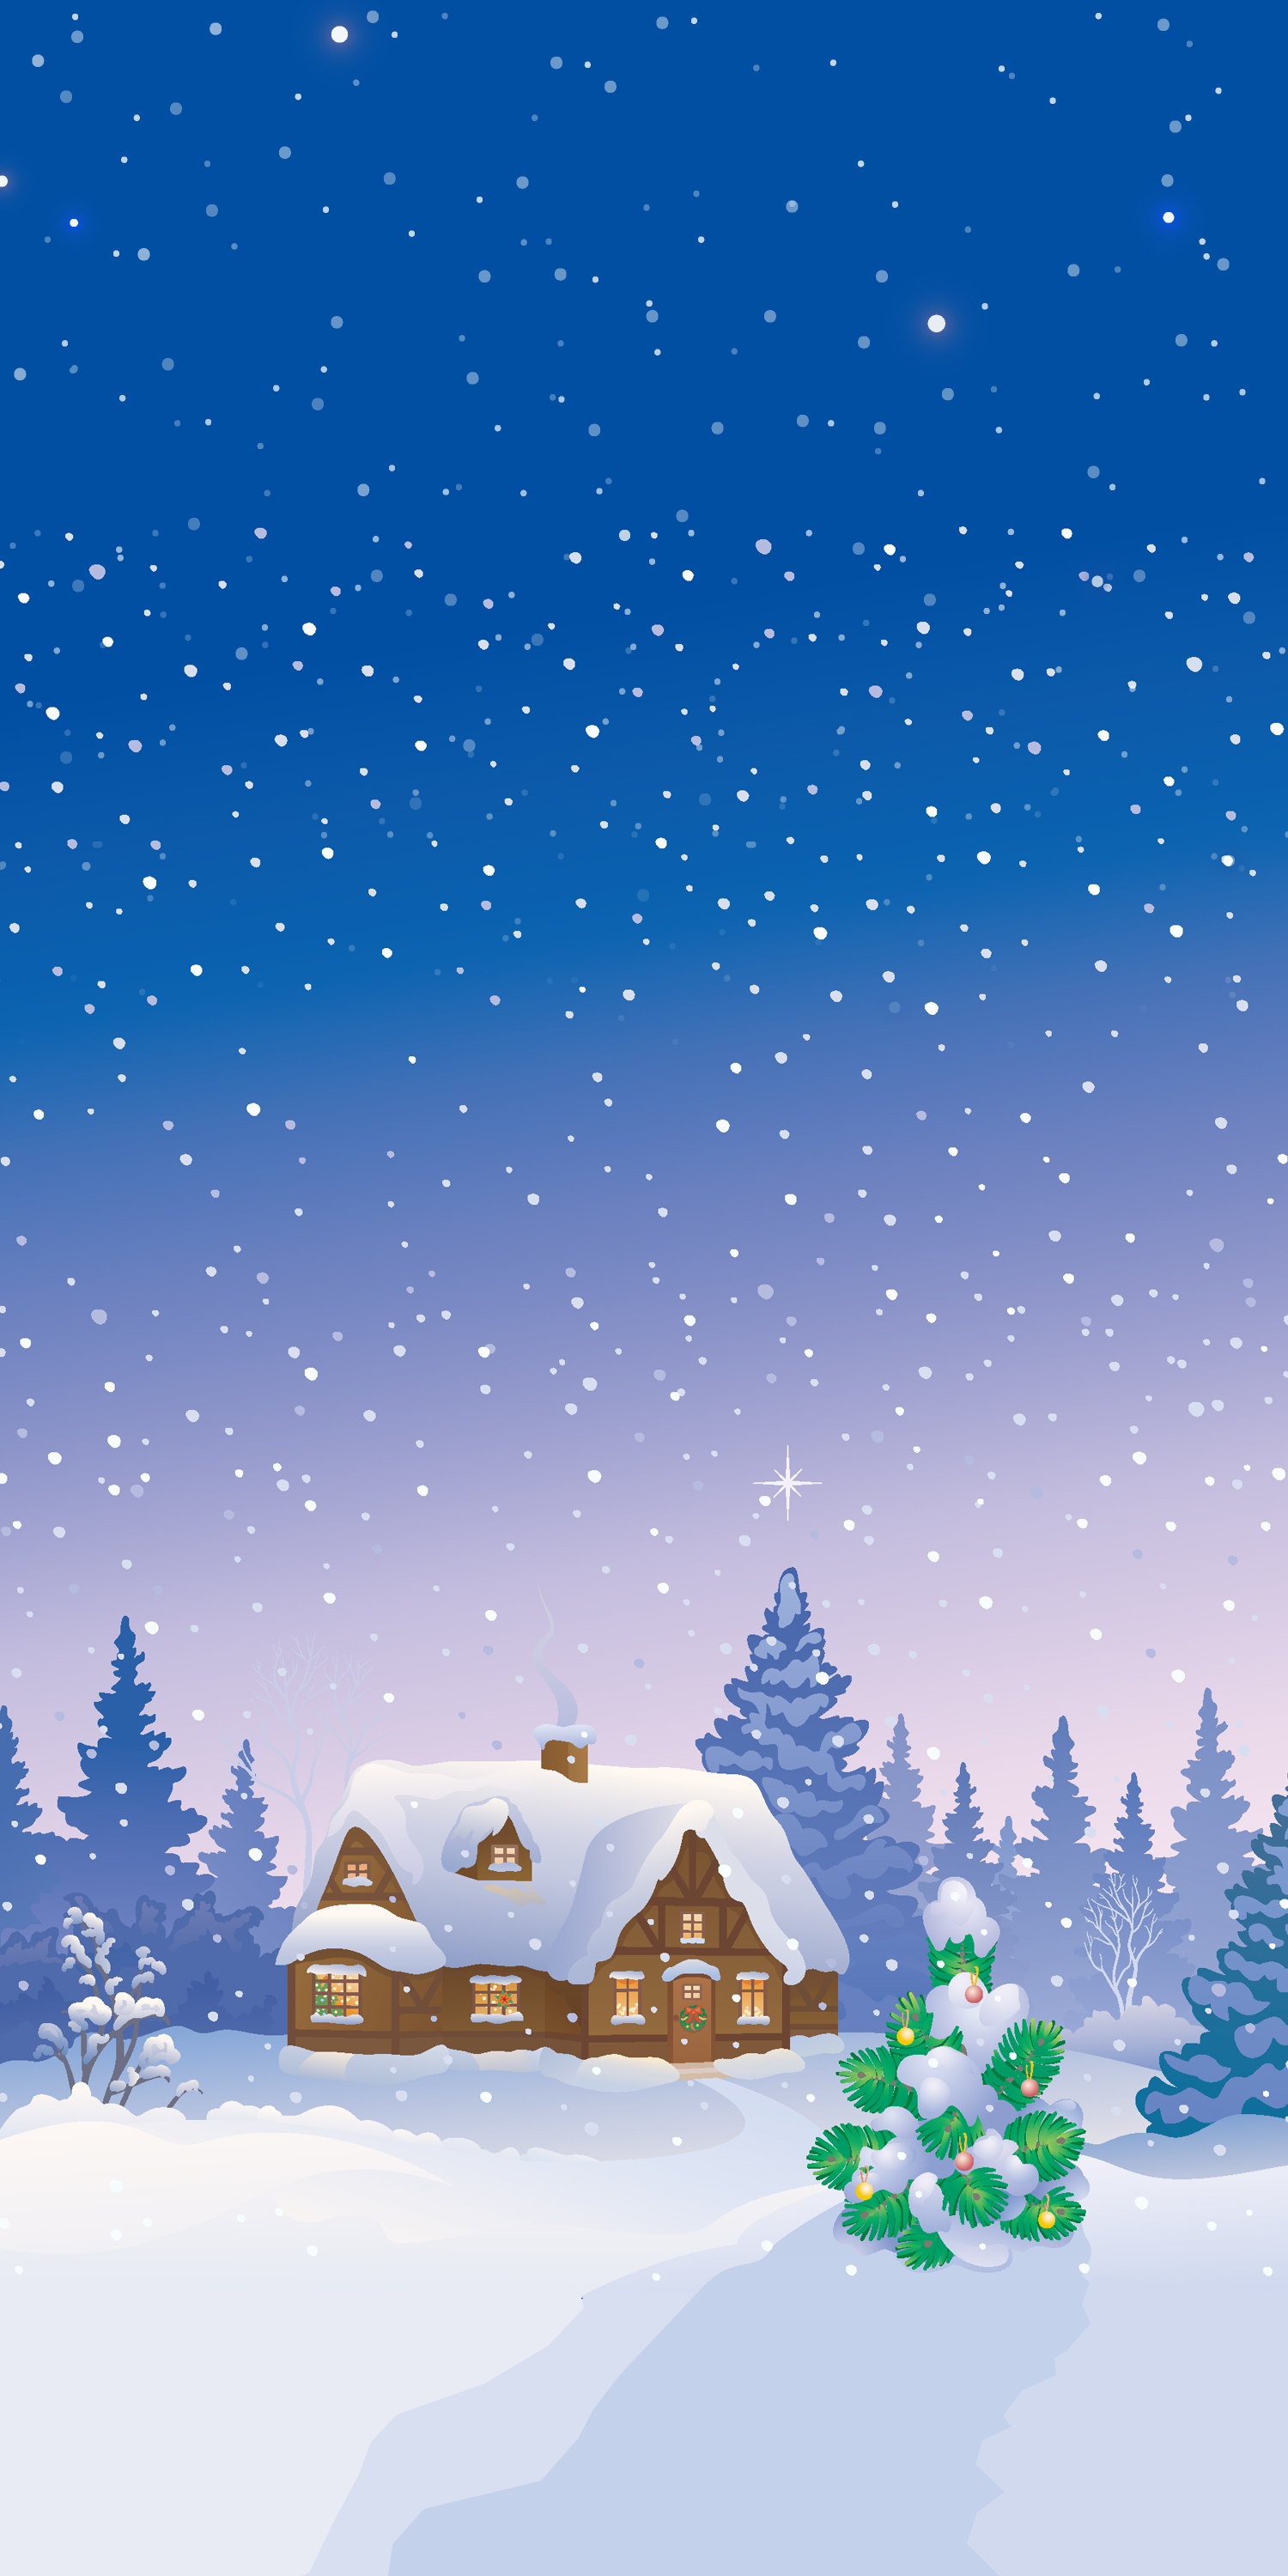 눈 벽지,겨울,하늘,눈,나무,크리스마스 이브